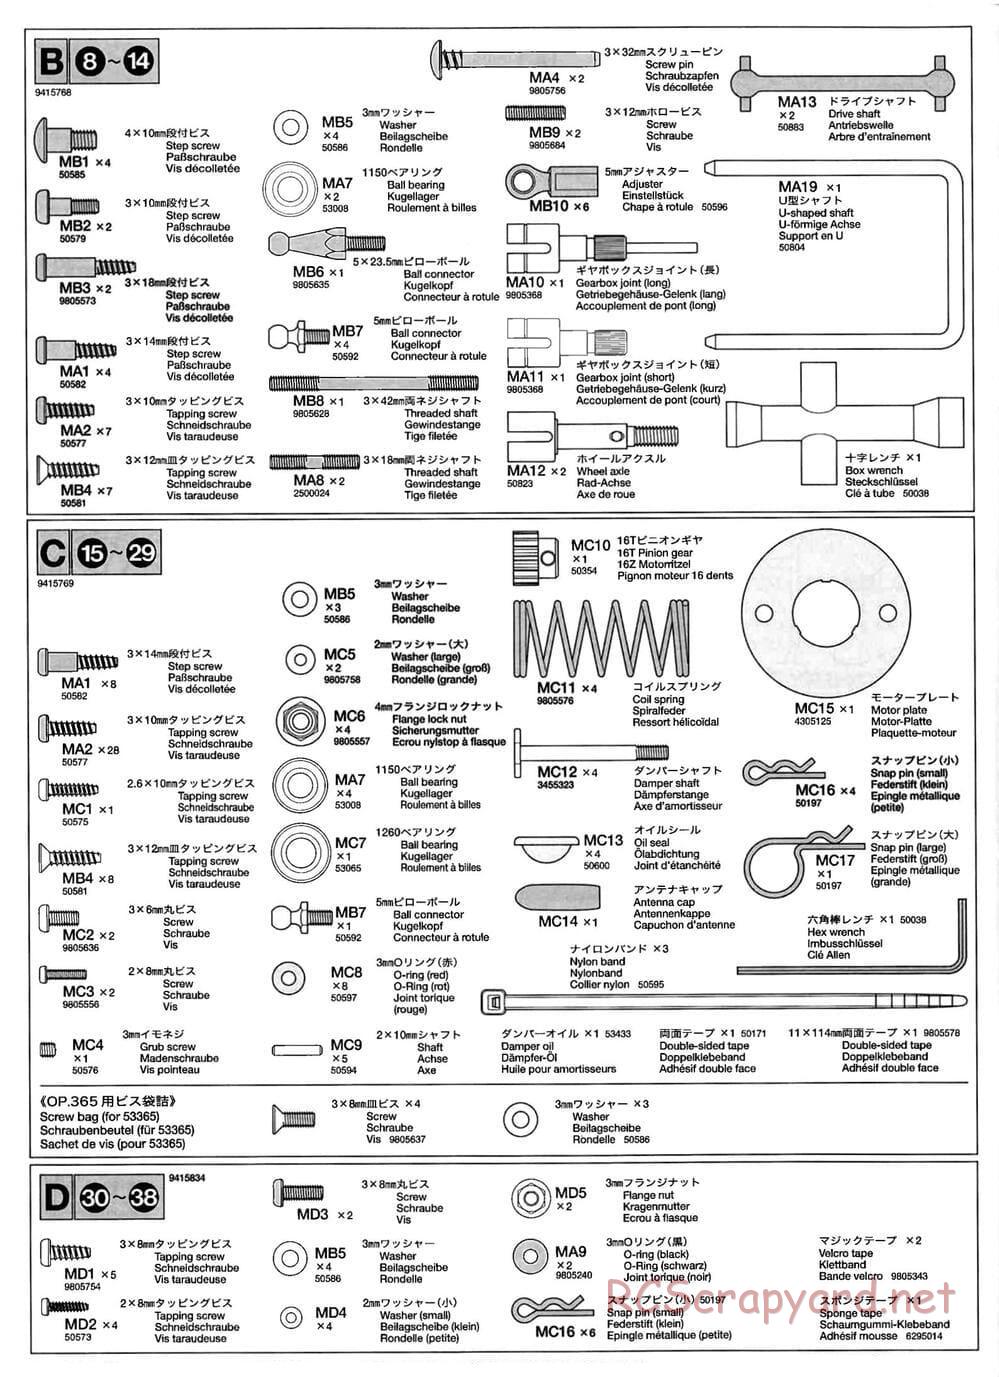 Tamiya - TB-01 Chassis - Manual - Page 18